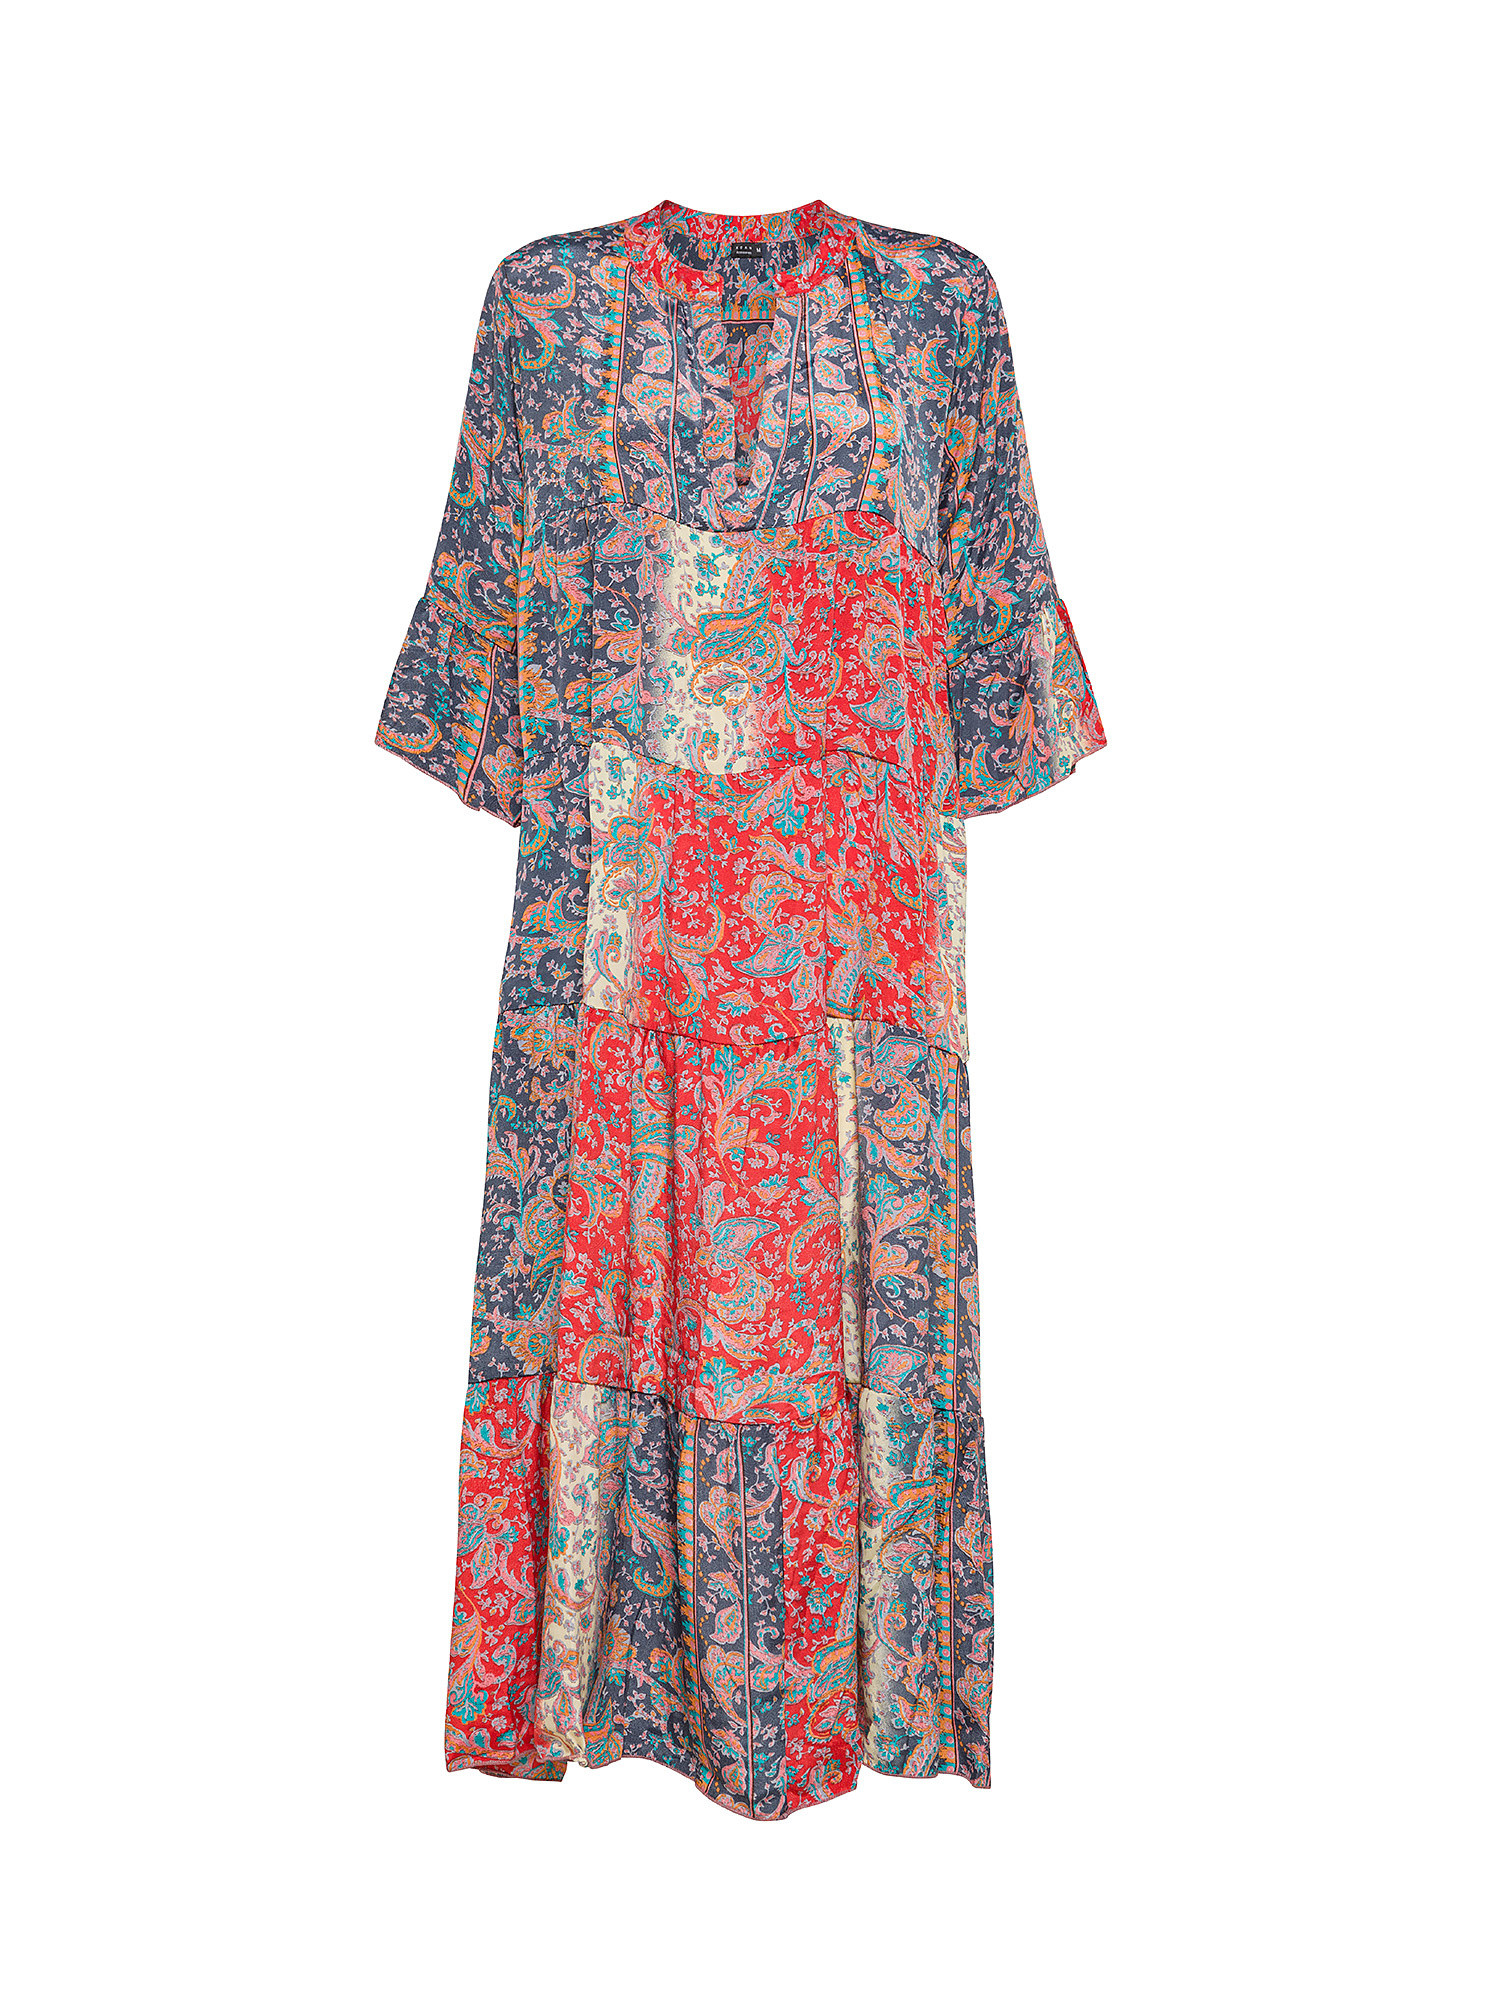 Koan - Long patterned dress, Multicolor, large image number 0